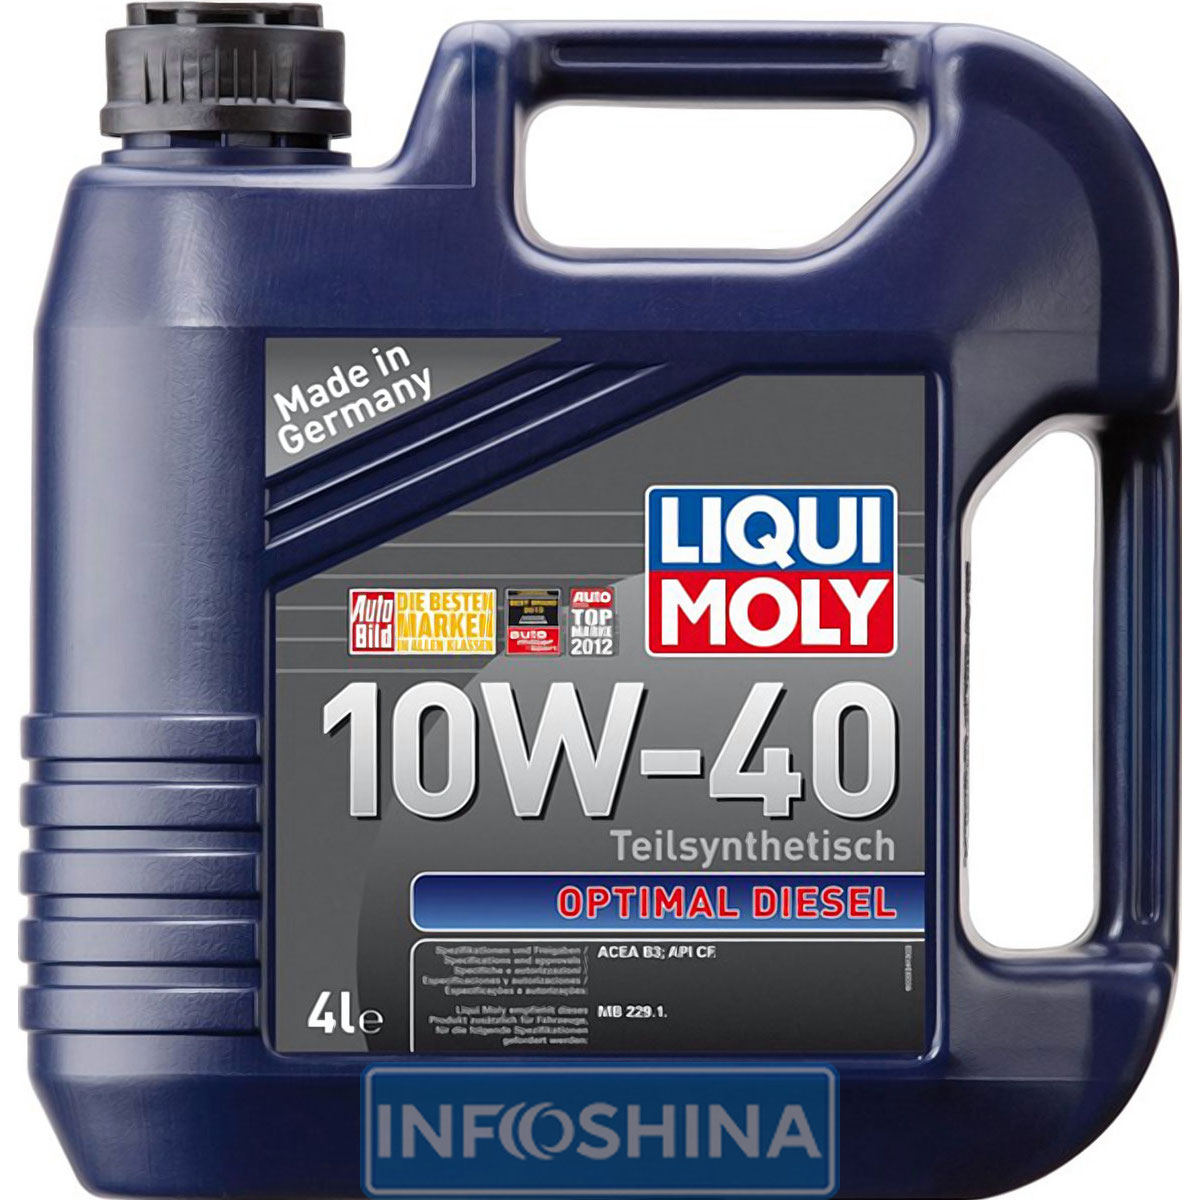 Liqui Moly Optimal Diesel 10W-40